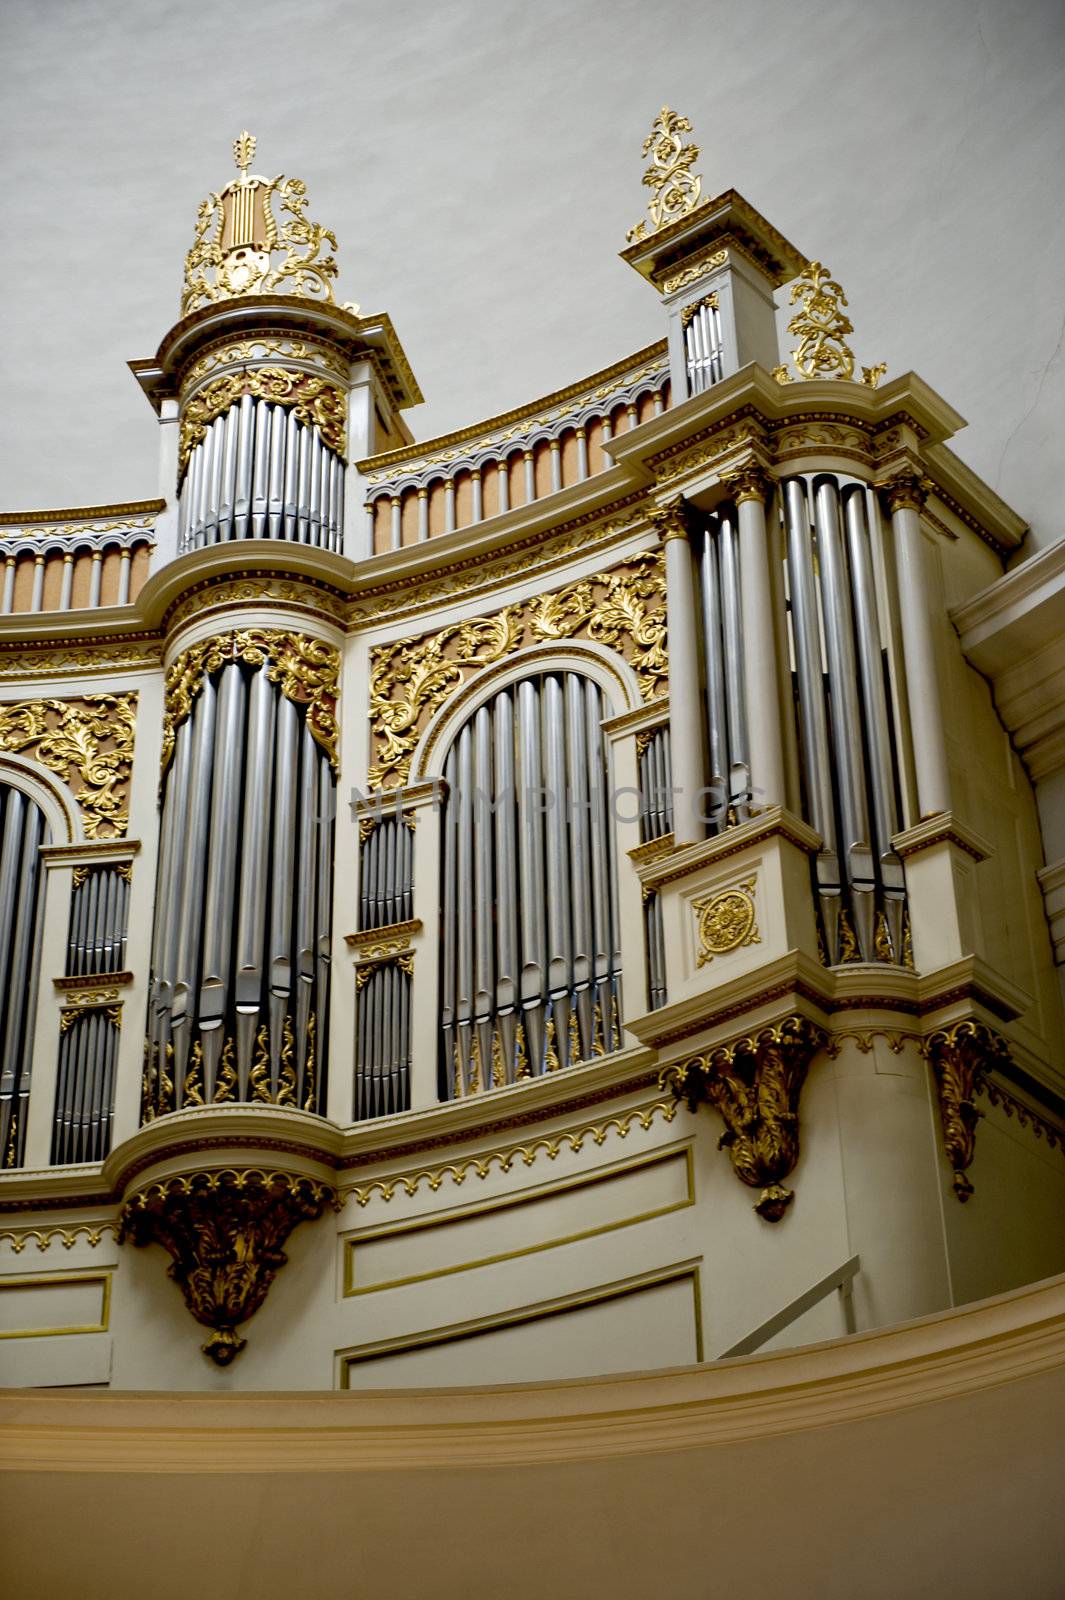 Church organ by Alenmax